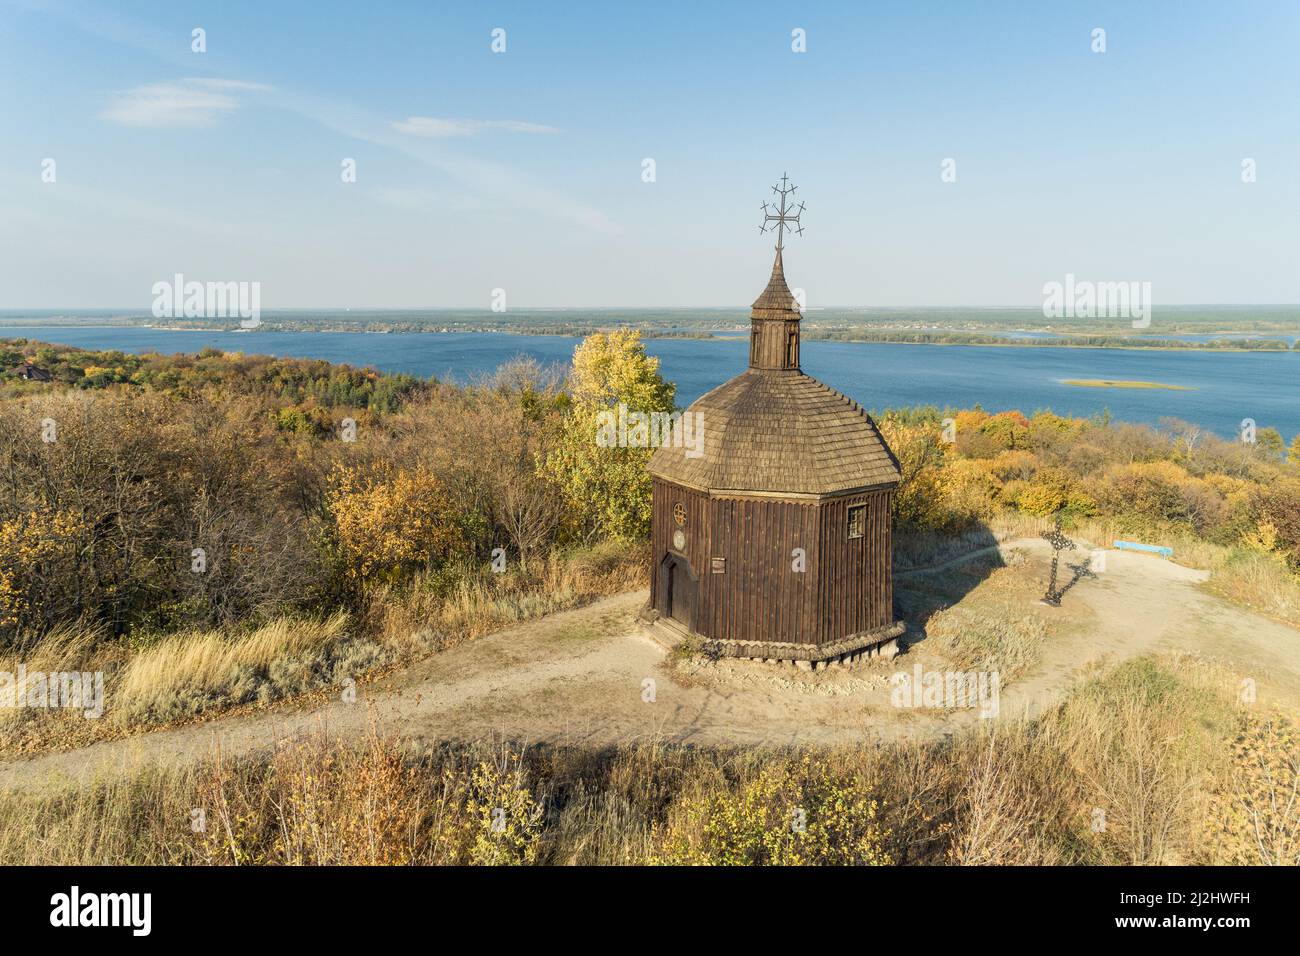 Automne magnifique vue panoramique aérienne de Vitachov (Vytachov) sur un fleuve Dneper, Ukraine. Excursions d'une journée autour de Kiev, Ukraine Banque D'Images